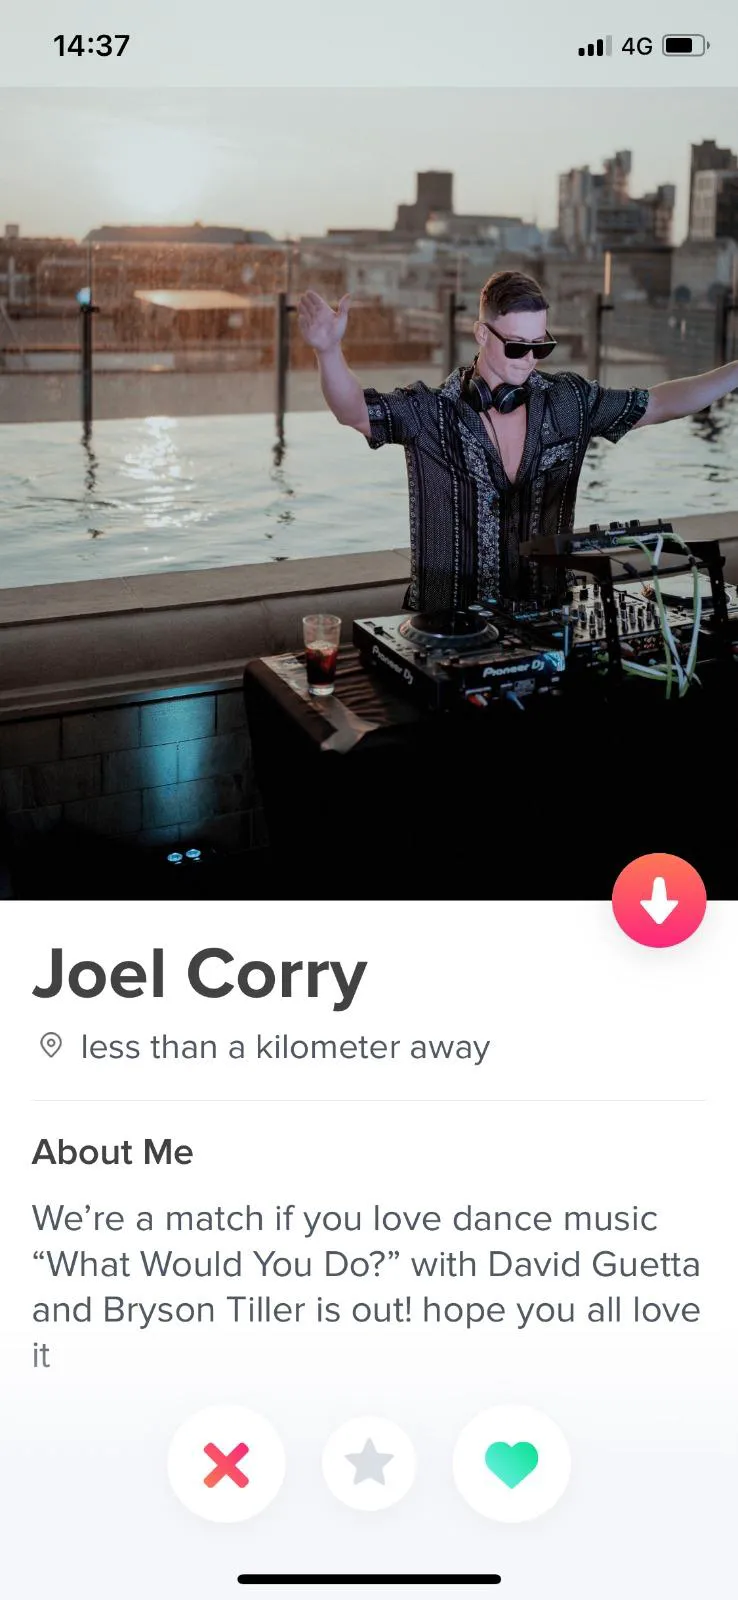 Tinder cho phép người dùng tương hợp với ngôi sao nhạc dance mới nổi Joel Corry